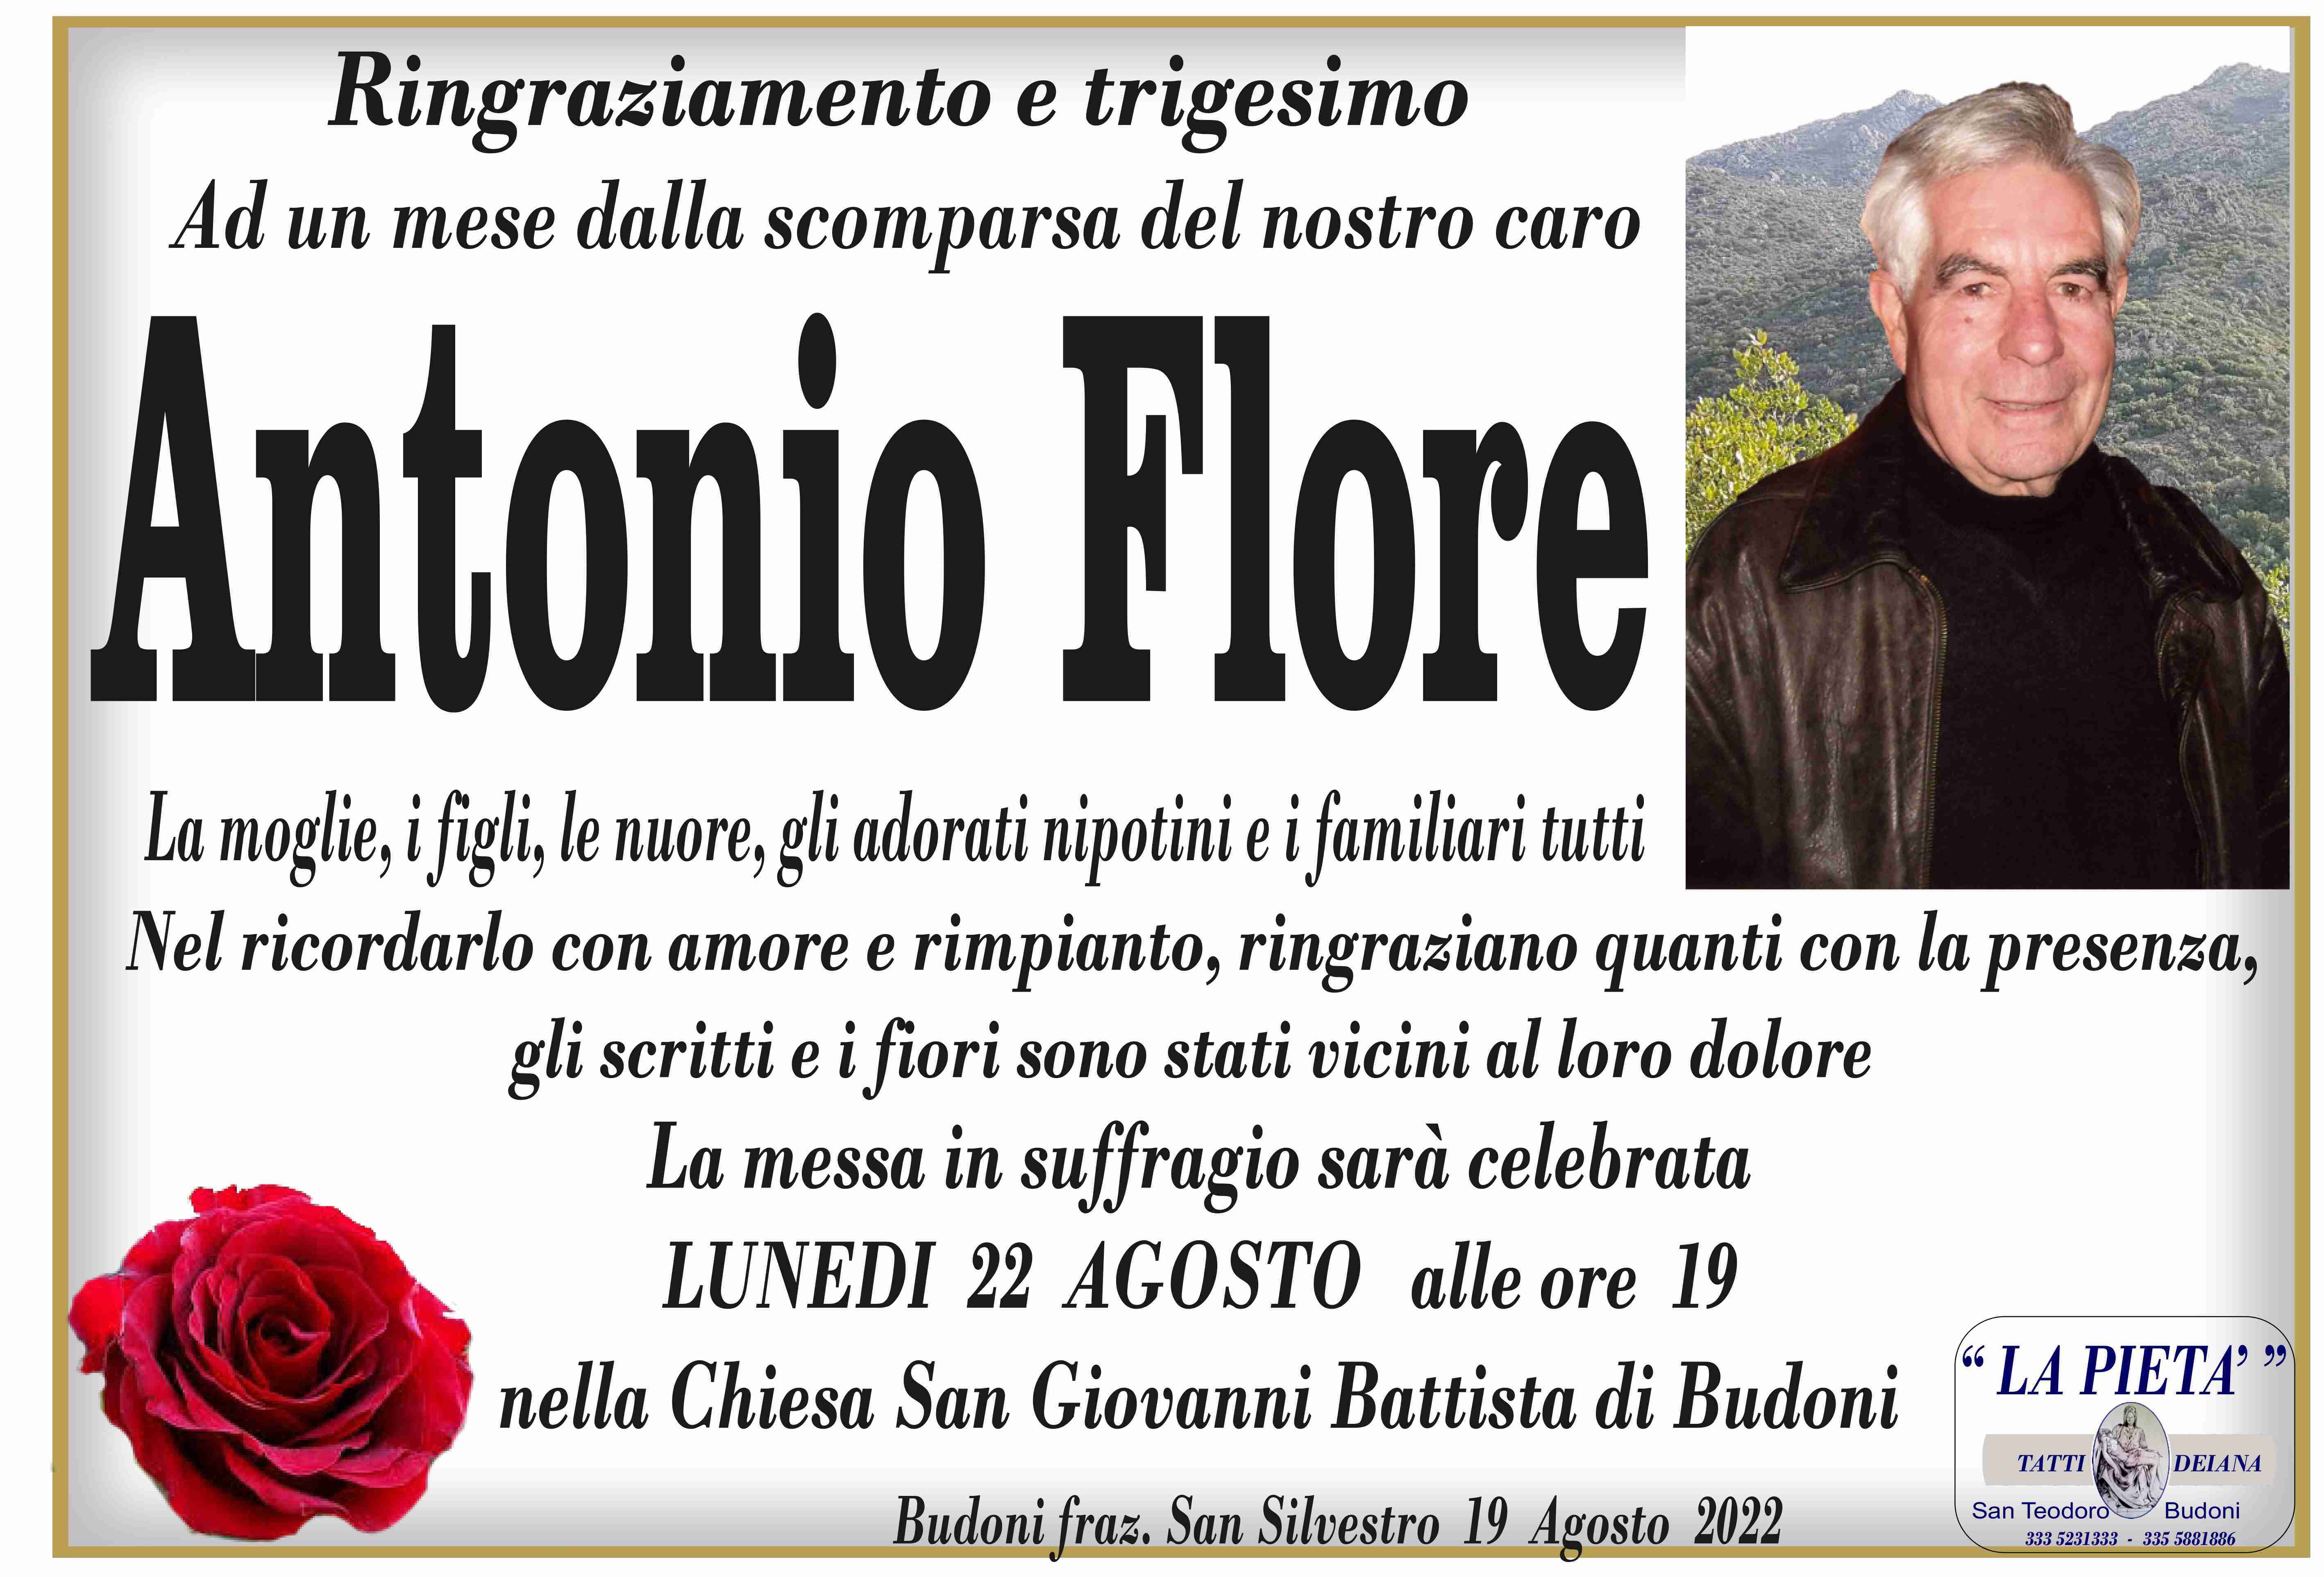 Antonio Flore